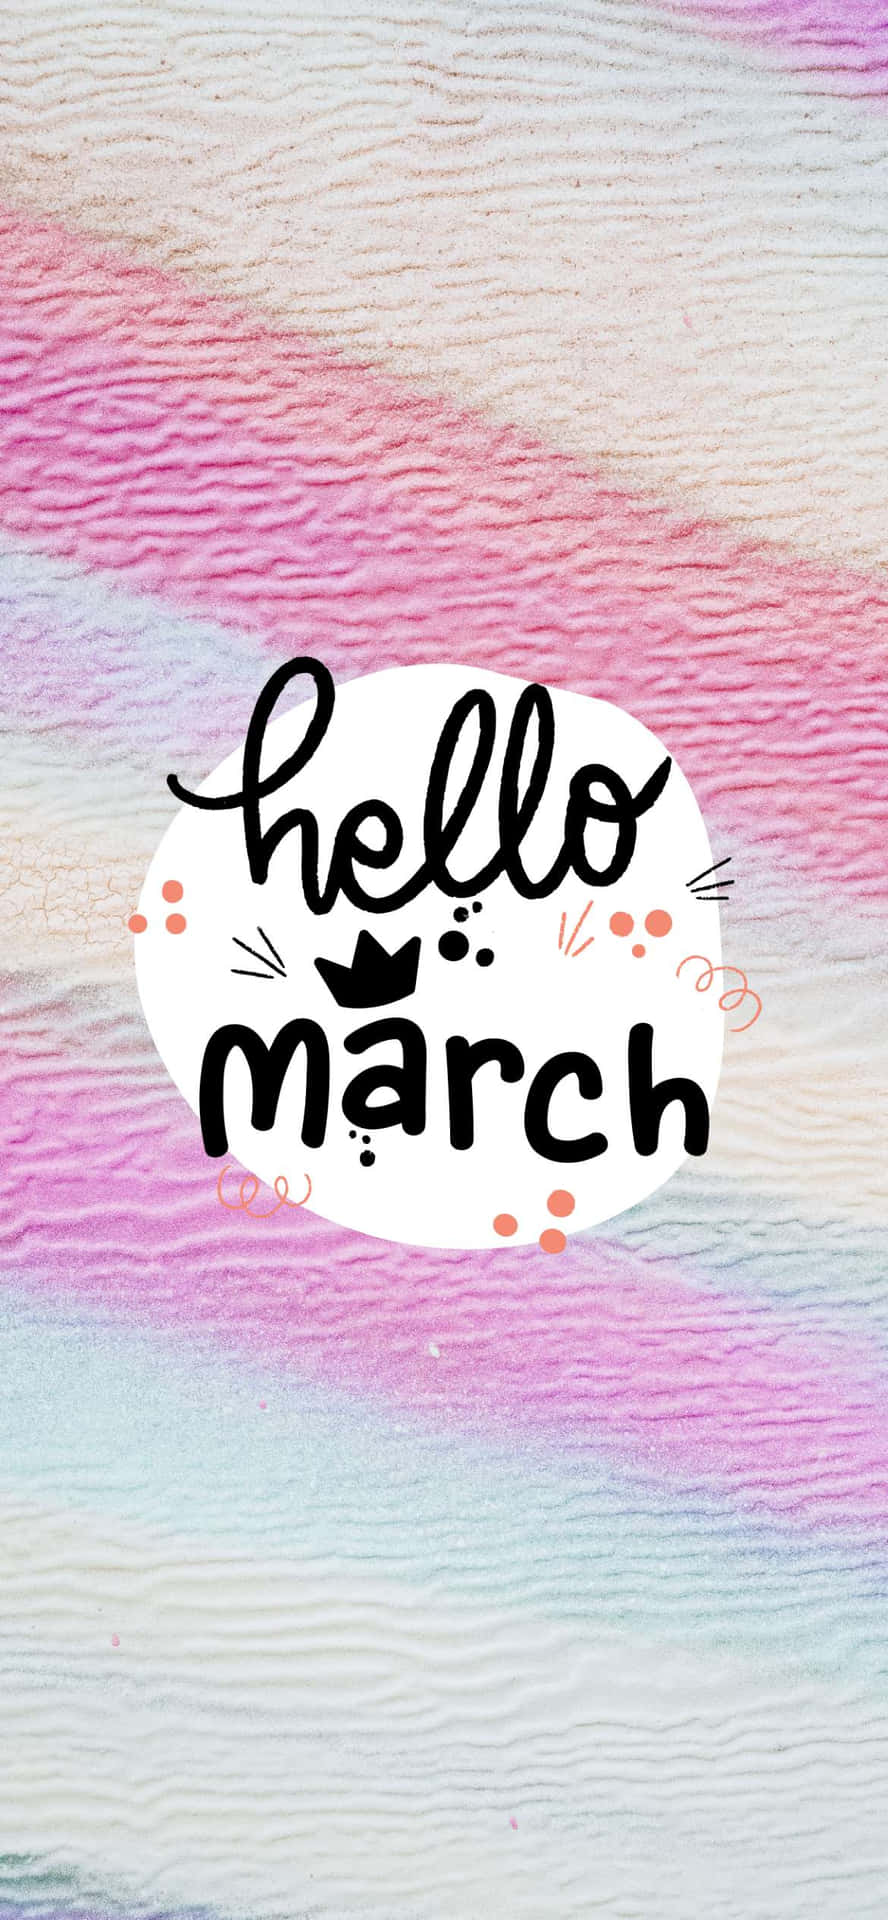 Velkommen marts! Denne baggrunds wallpaper fejrer marts komme! Wallpaper